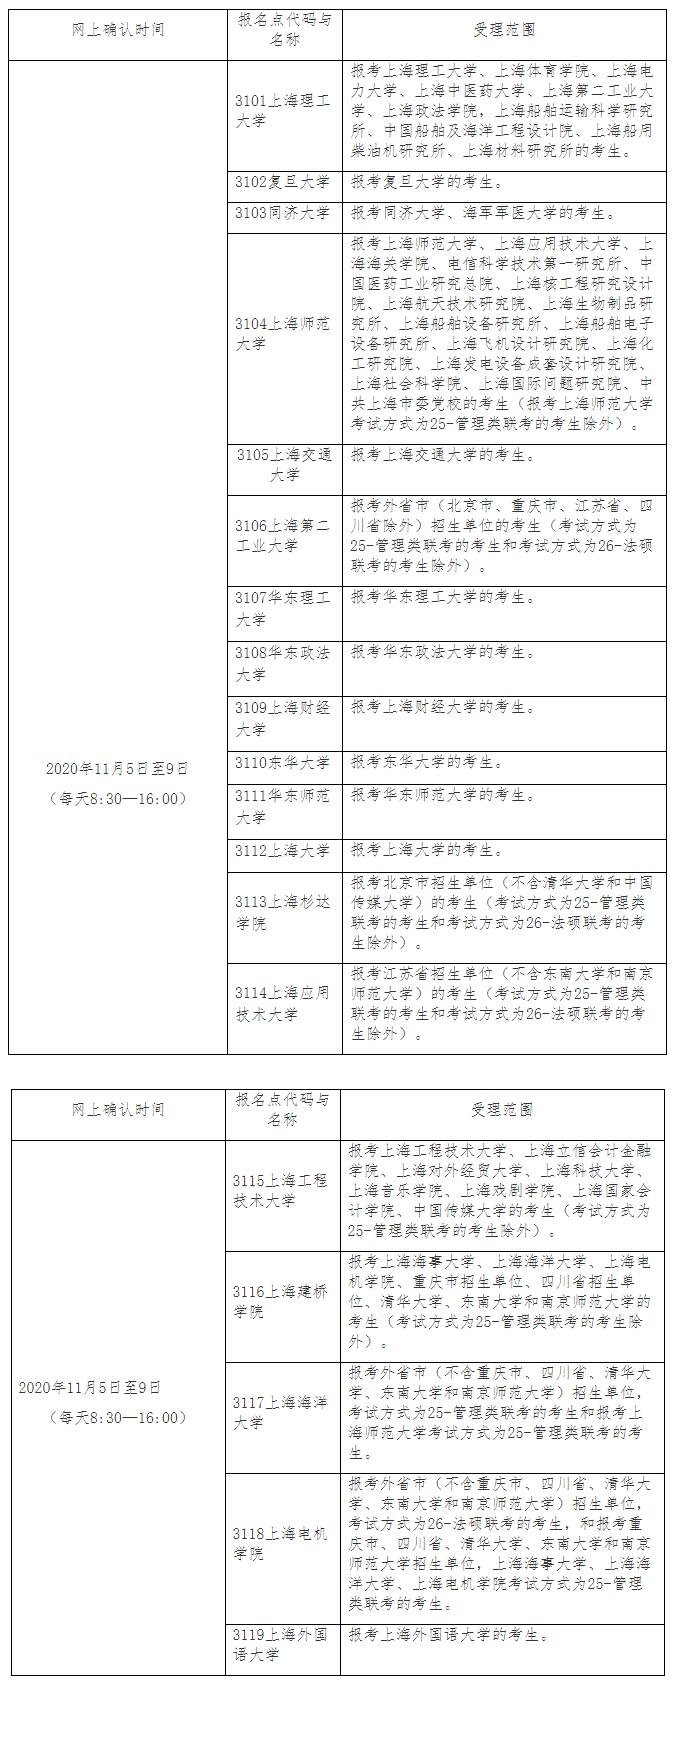 上海2021年考研报名共设置19处报考点